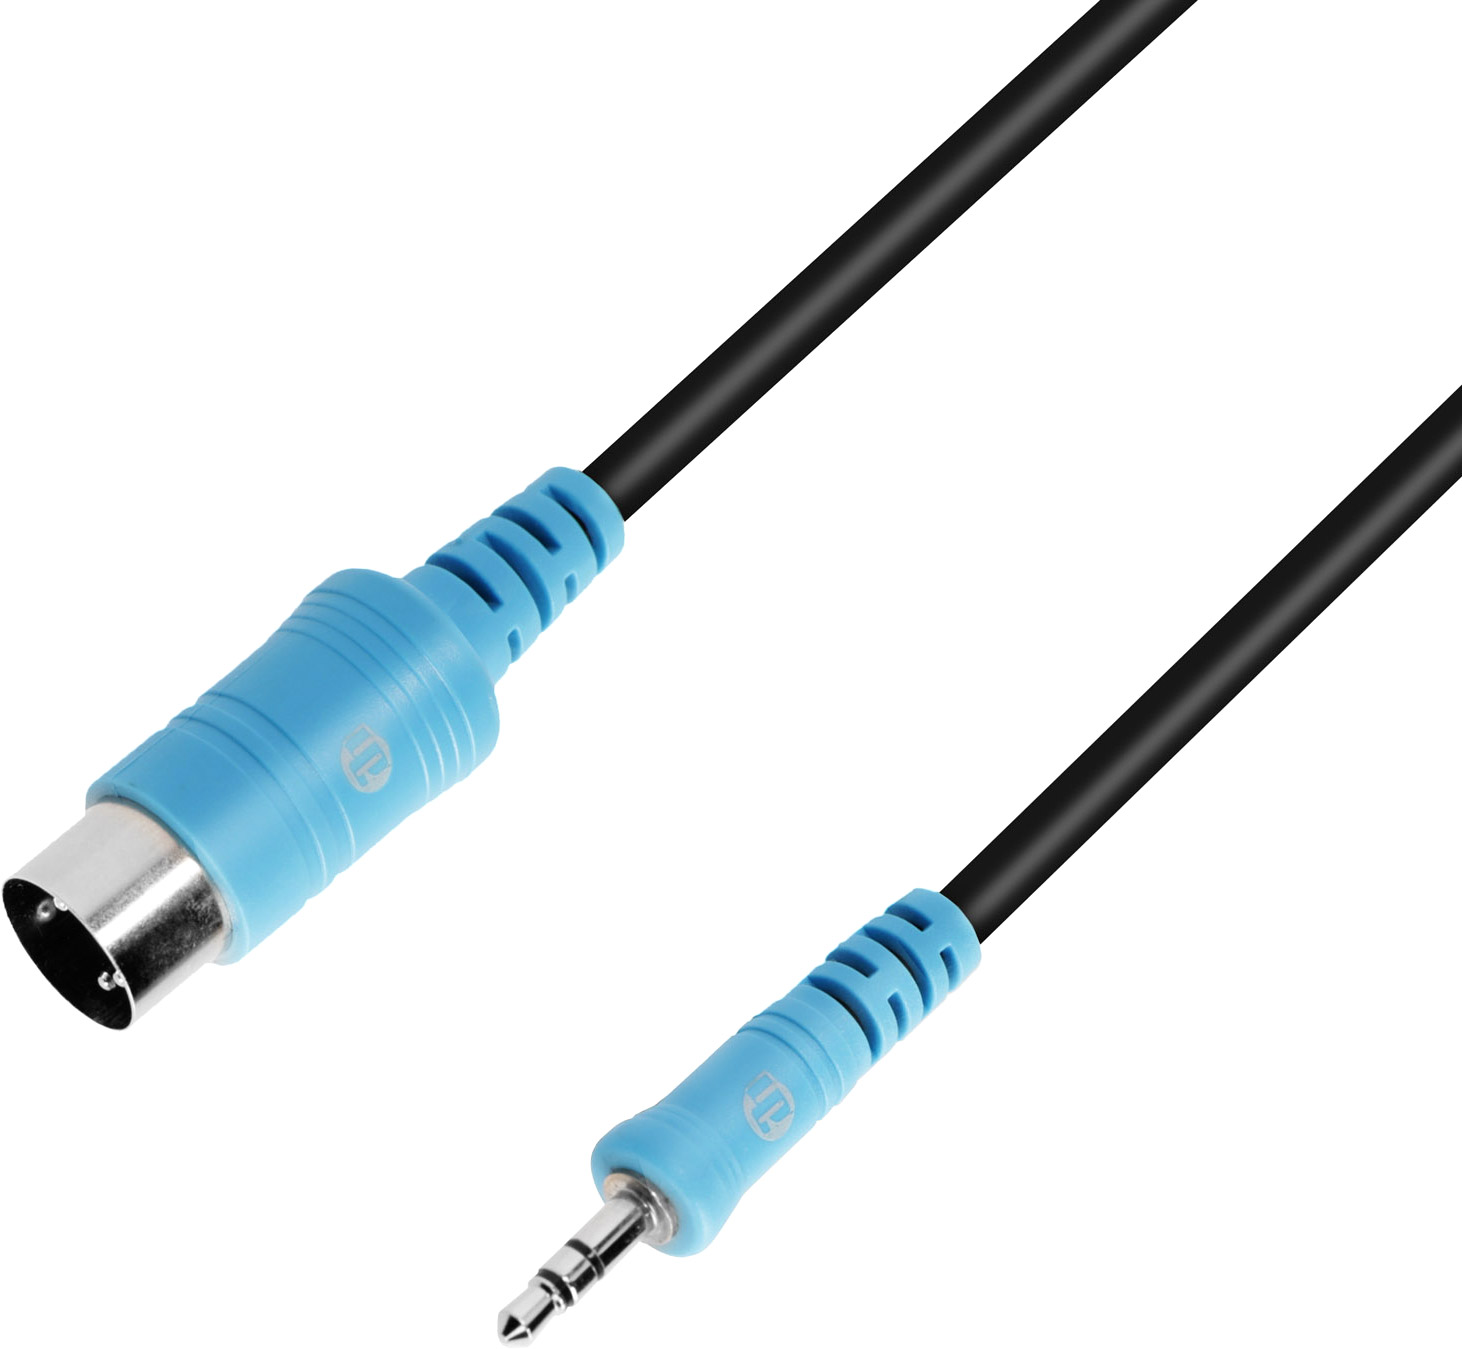 Conector miniJack TRS macho para montar cables estéreo 3.5 mm de diámetro